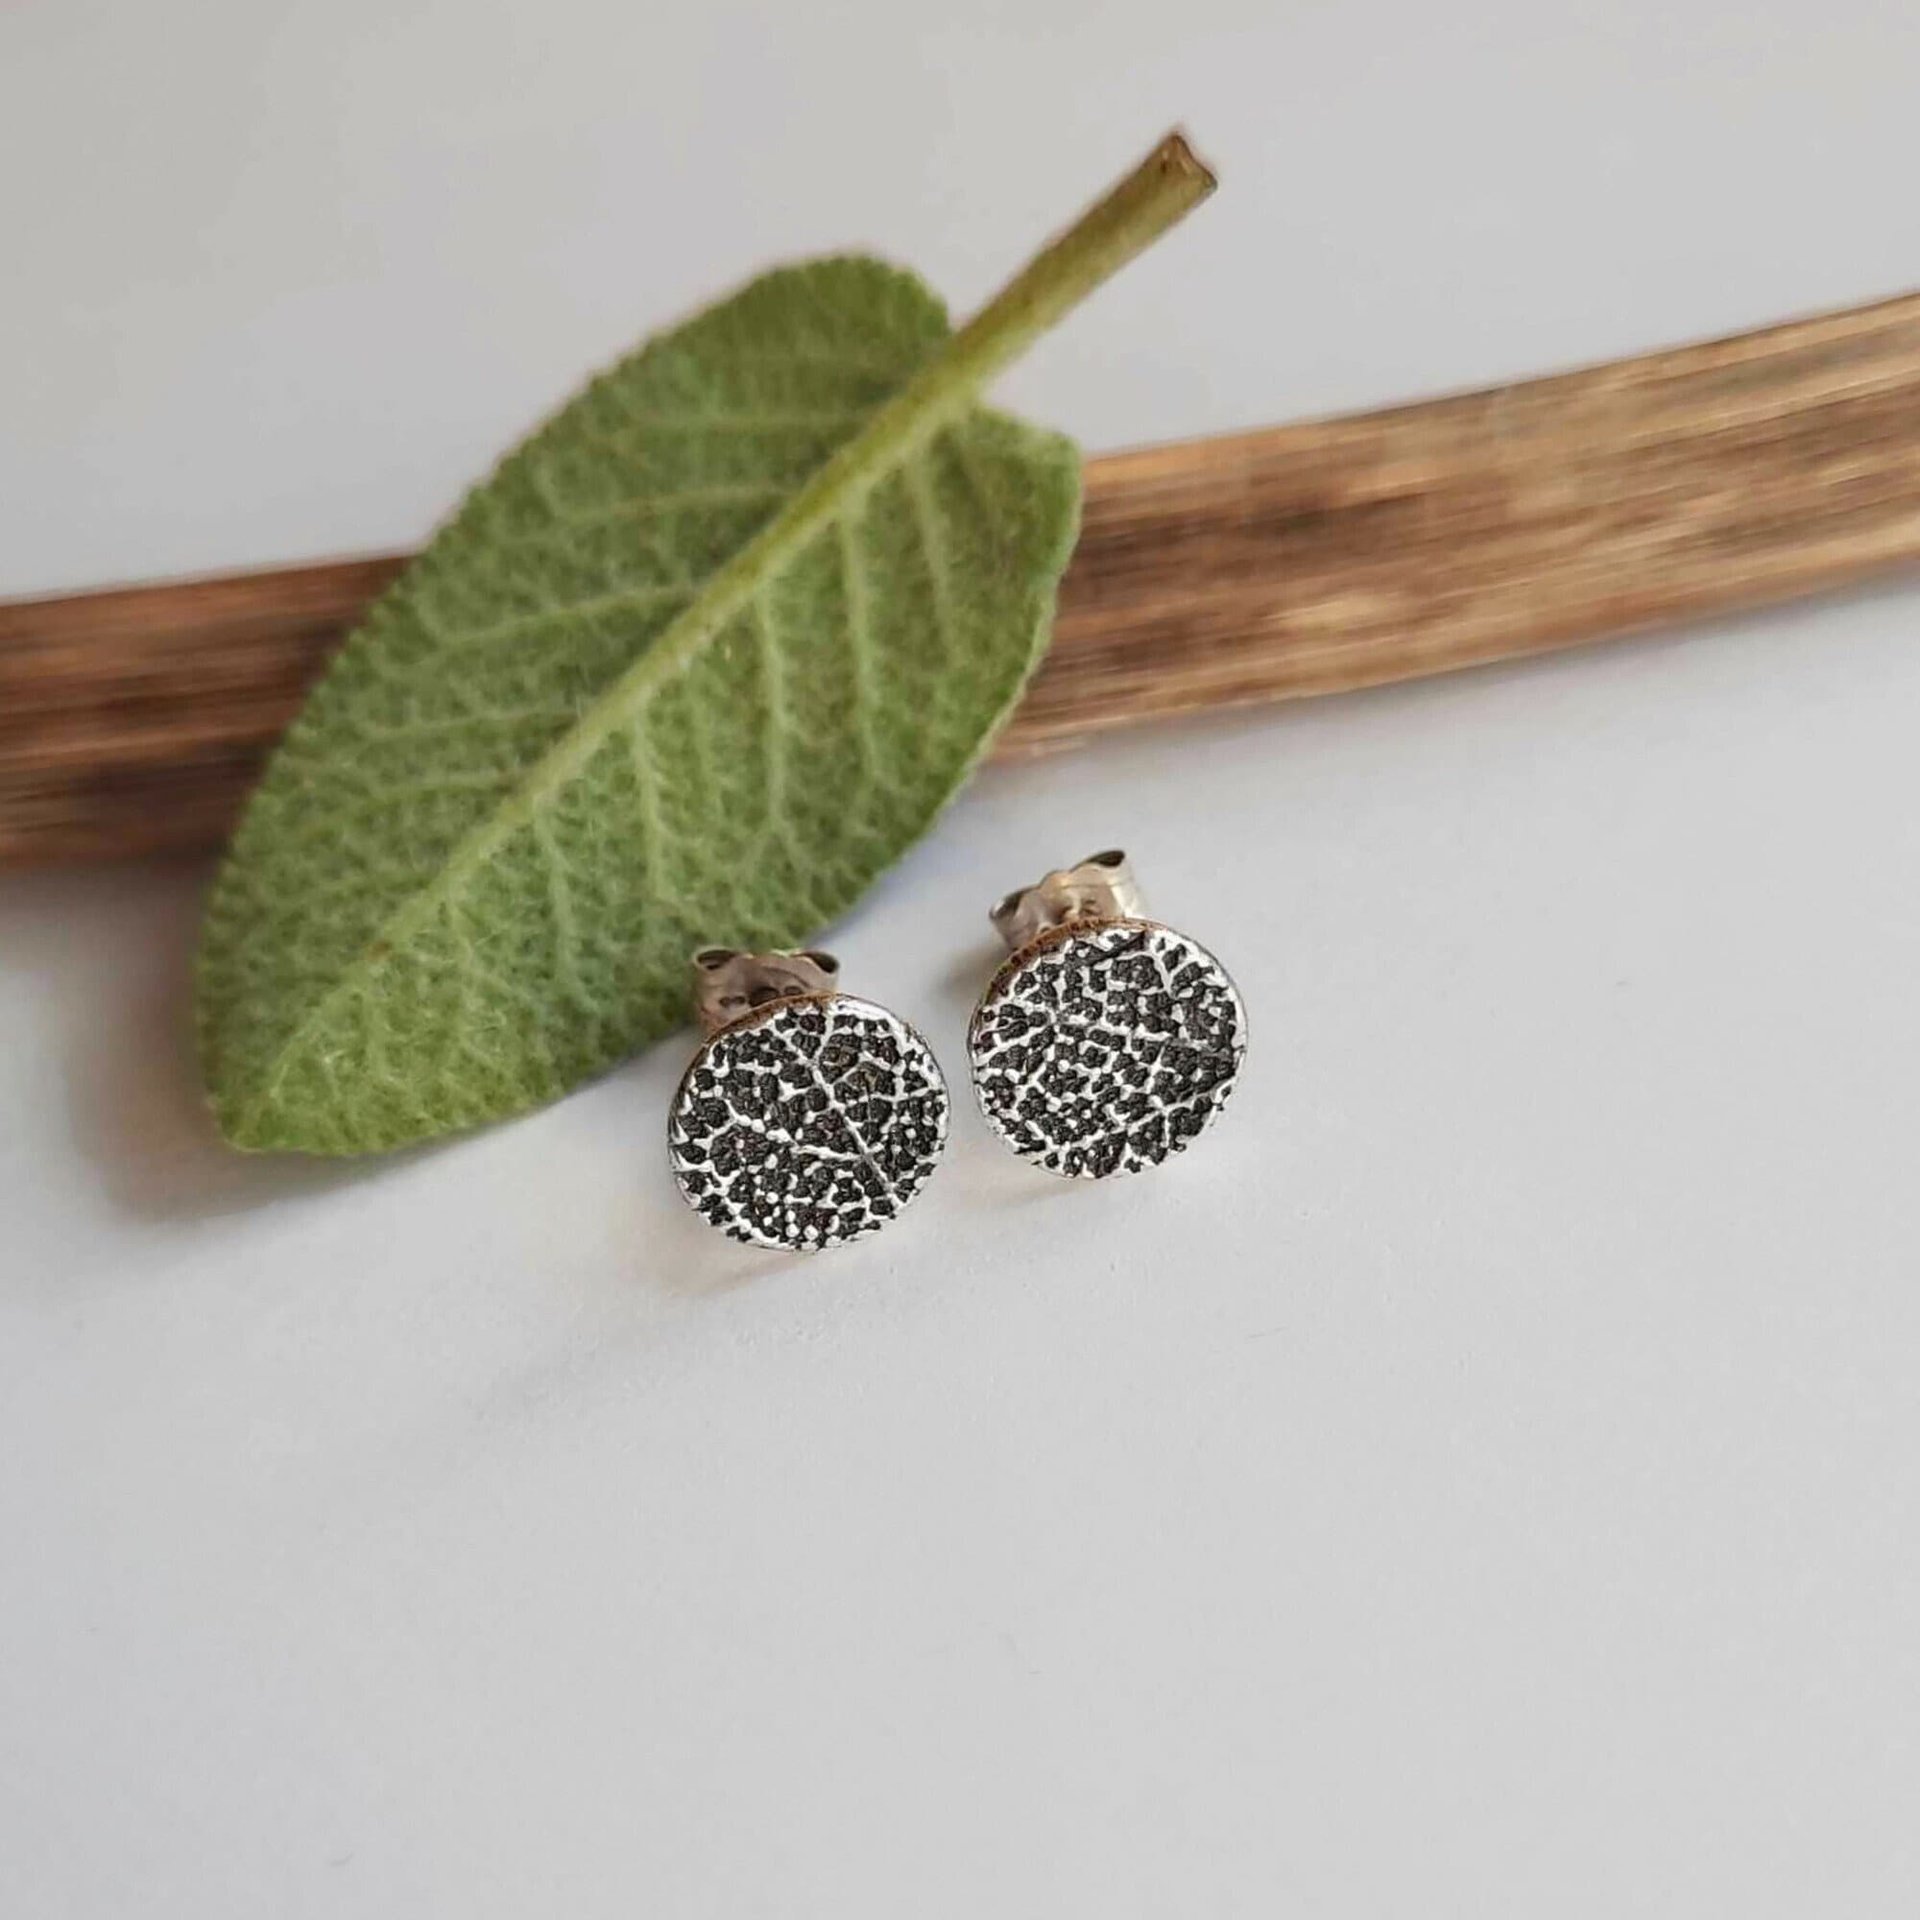 Oxidised Silver Sage Leaf Stud Earrings ~ Handmade by The Tiny Tree Frog Jewellery